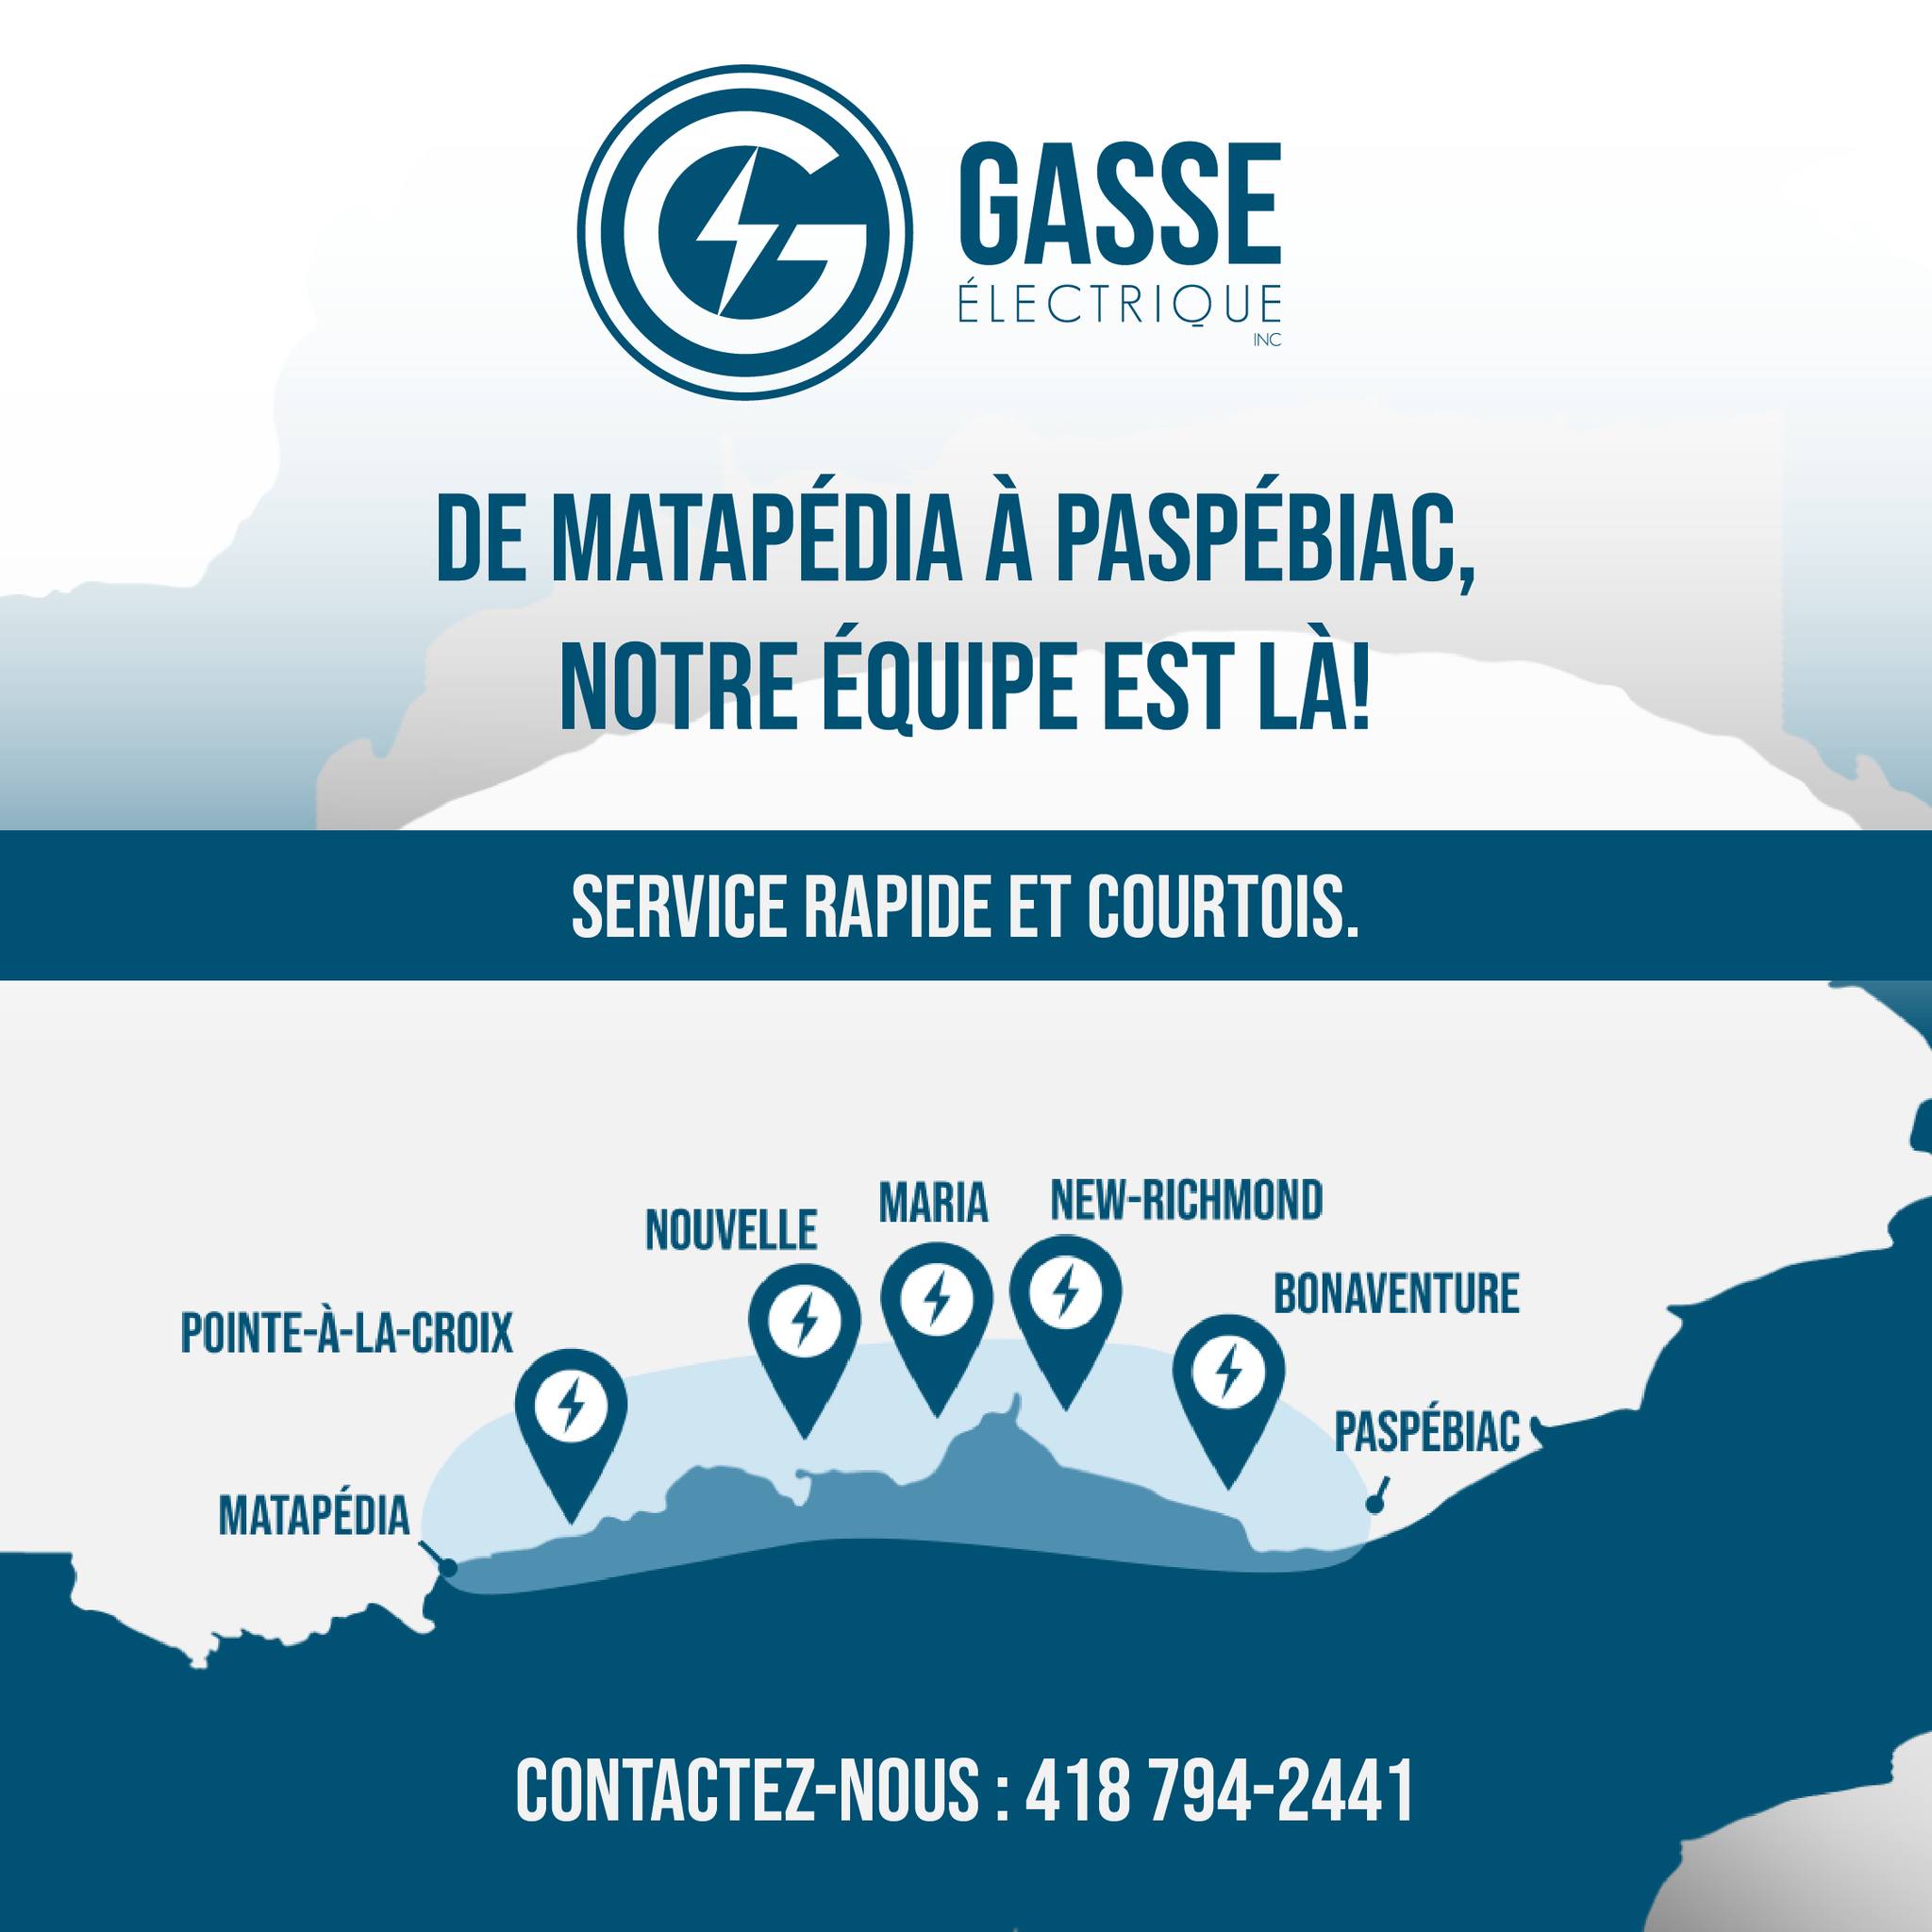 Gasse Électrique Inc. 10 Rue Parent, Nouvelle Quebec G0C 2E0